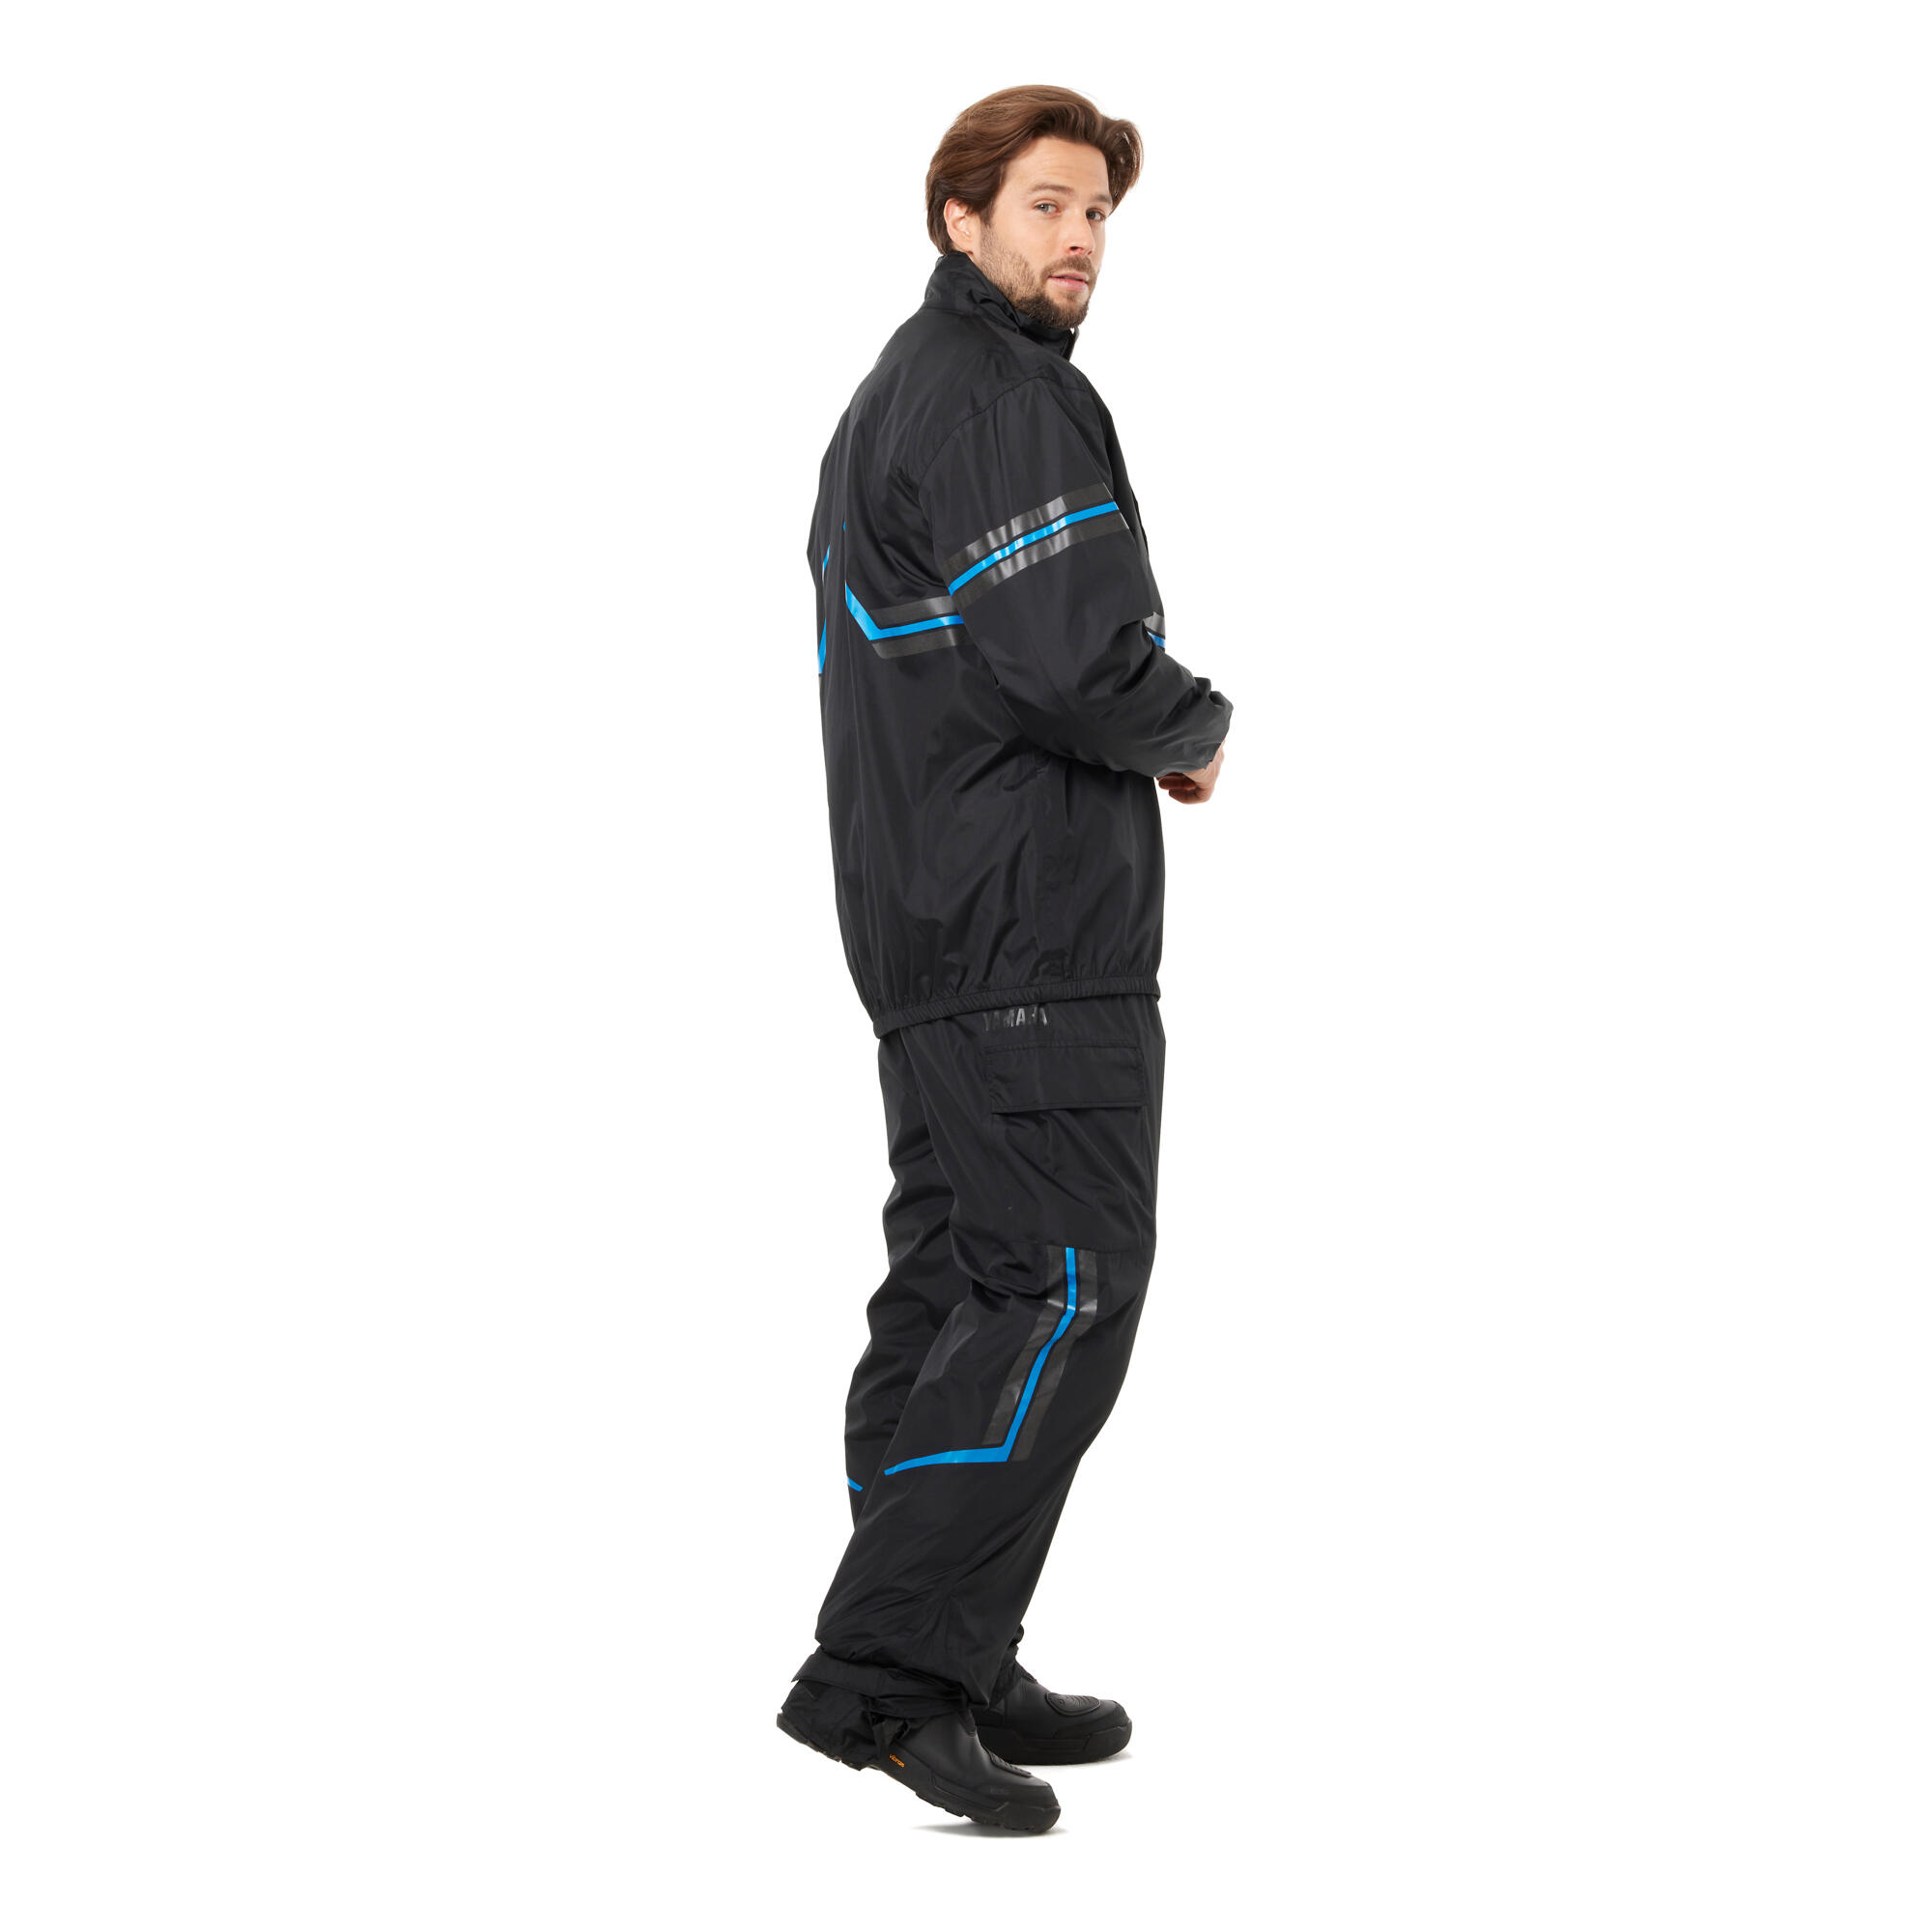 Rainwear Jacket Unisex - Clothing & Merchandise - Yamaha Motor